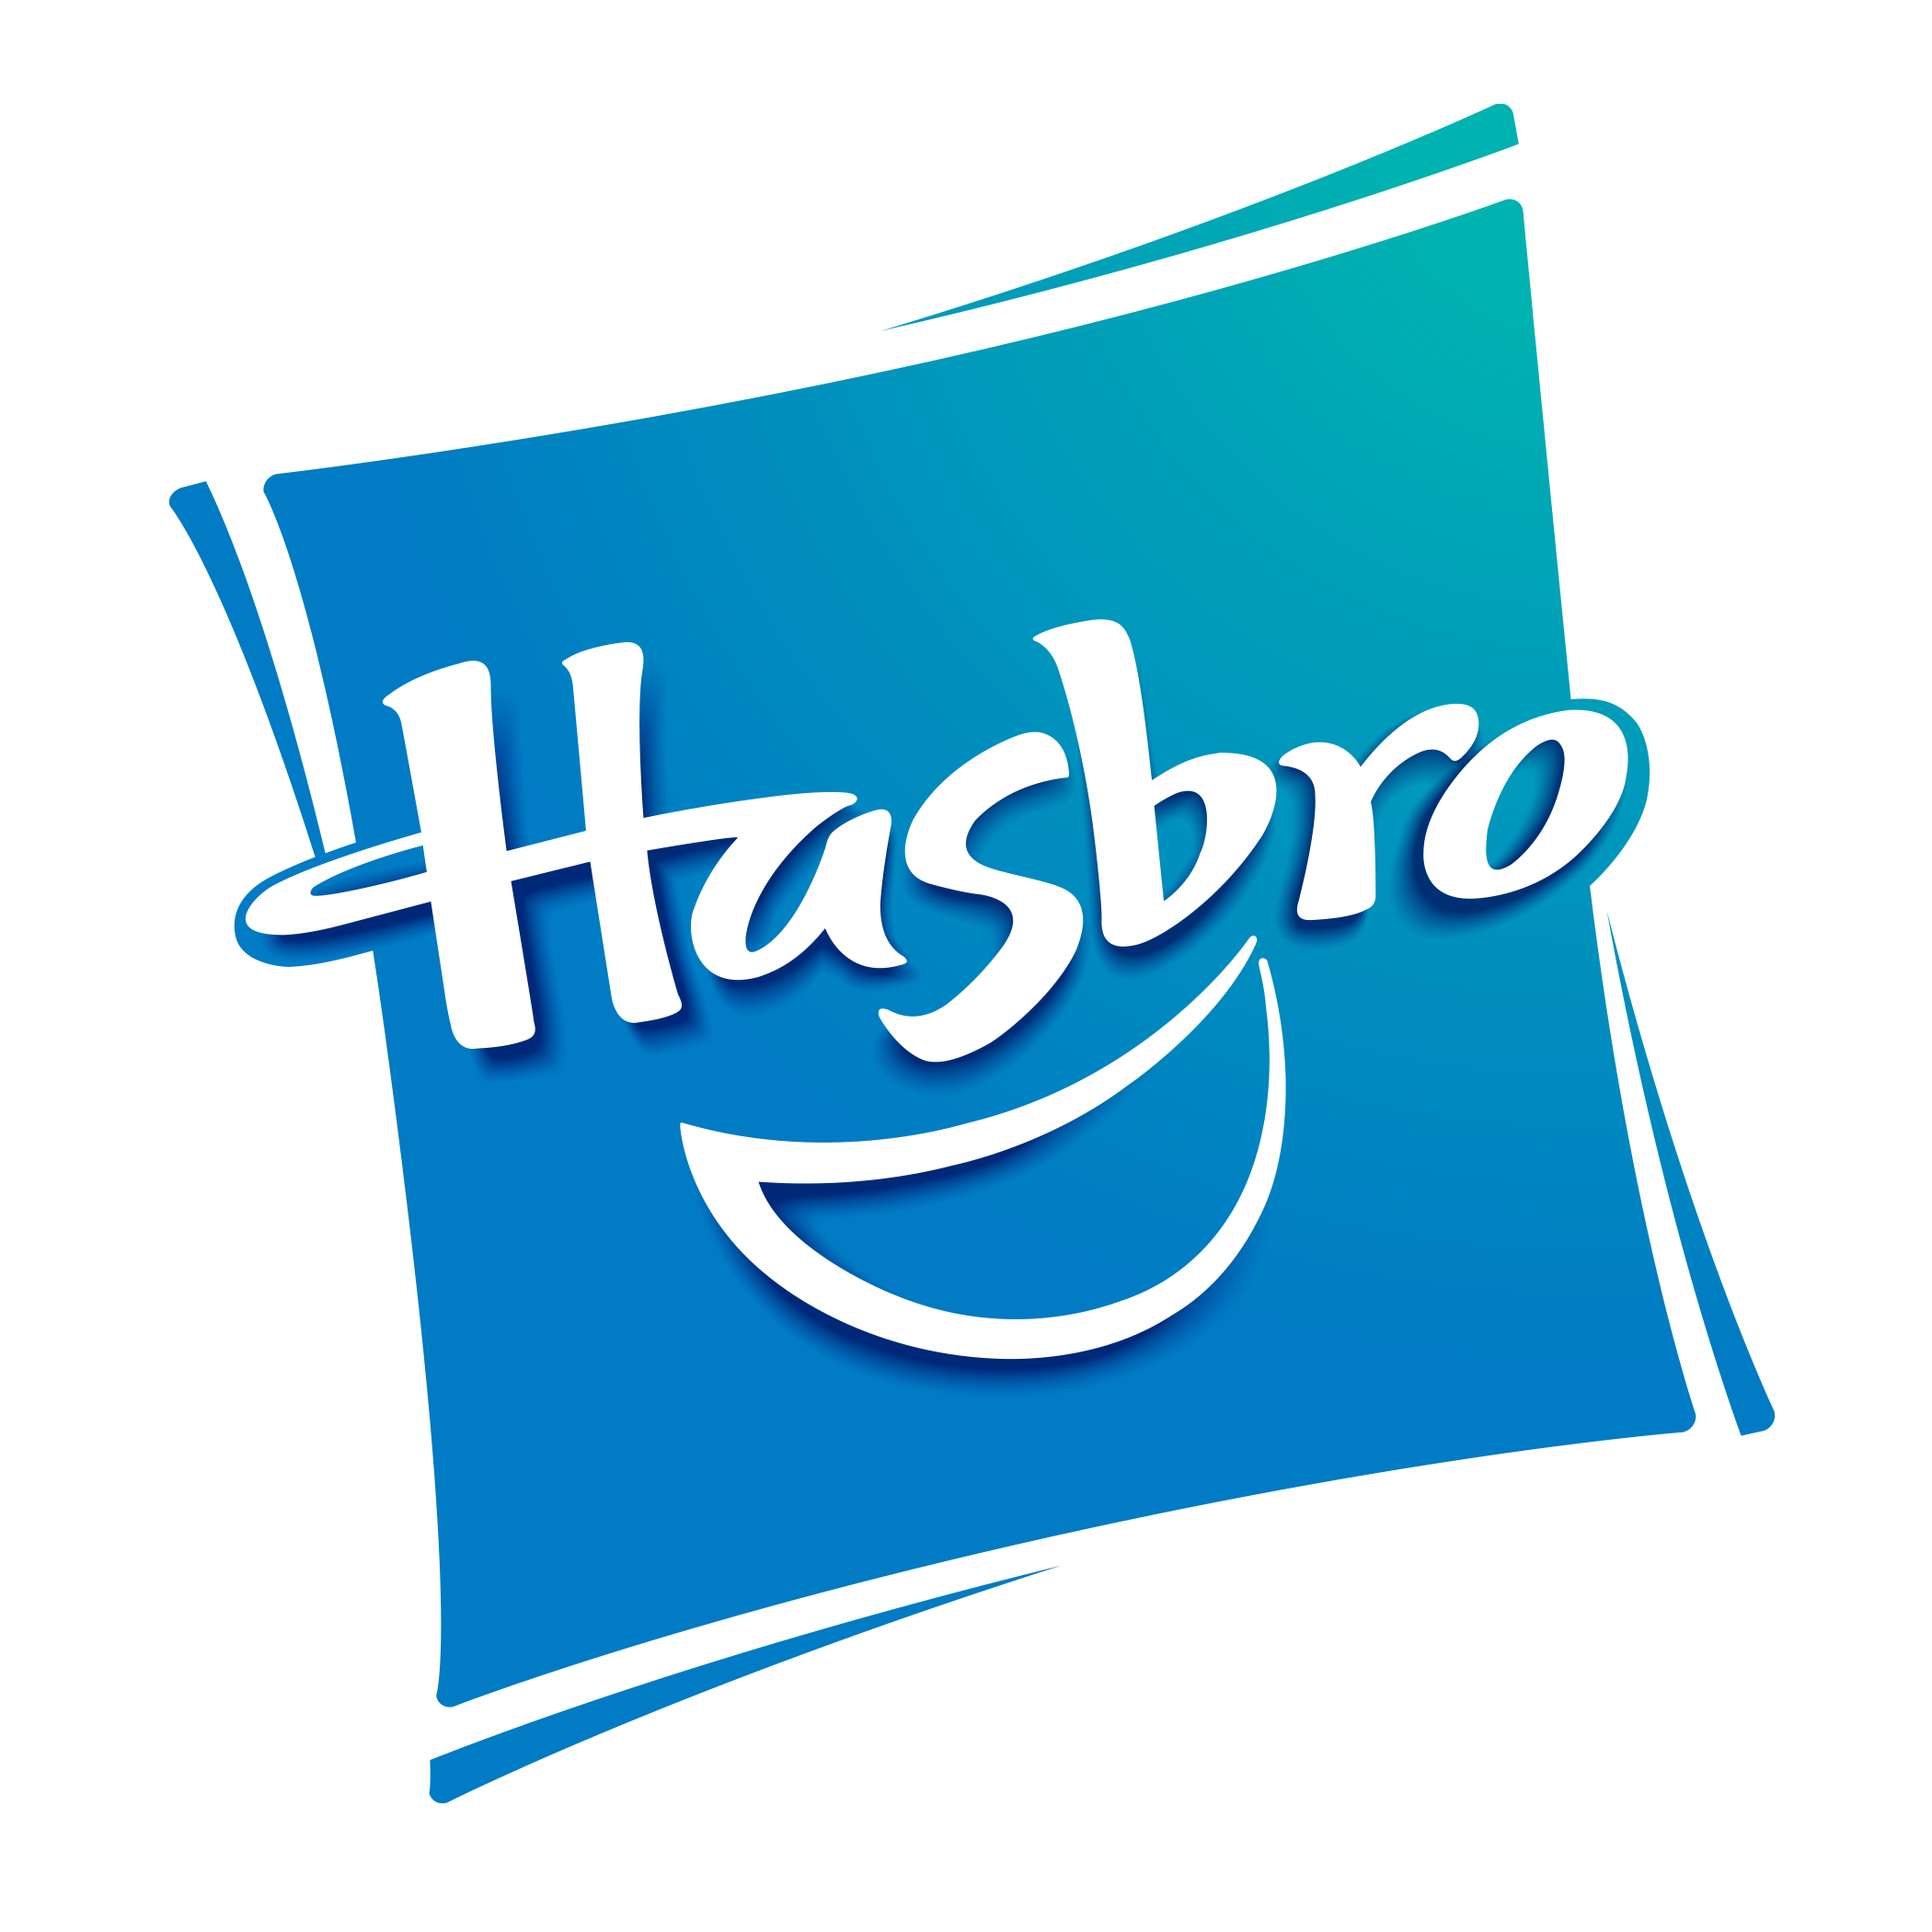 Hasbro logo